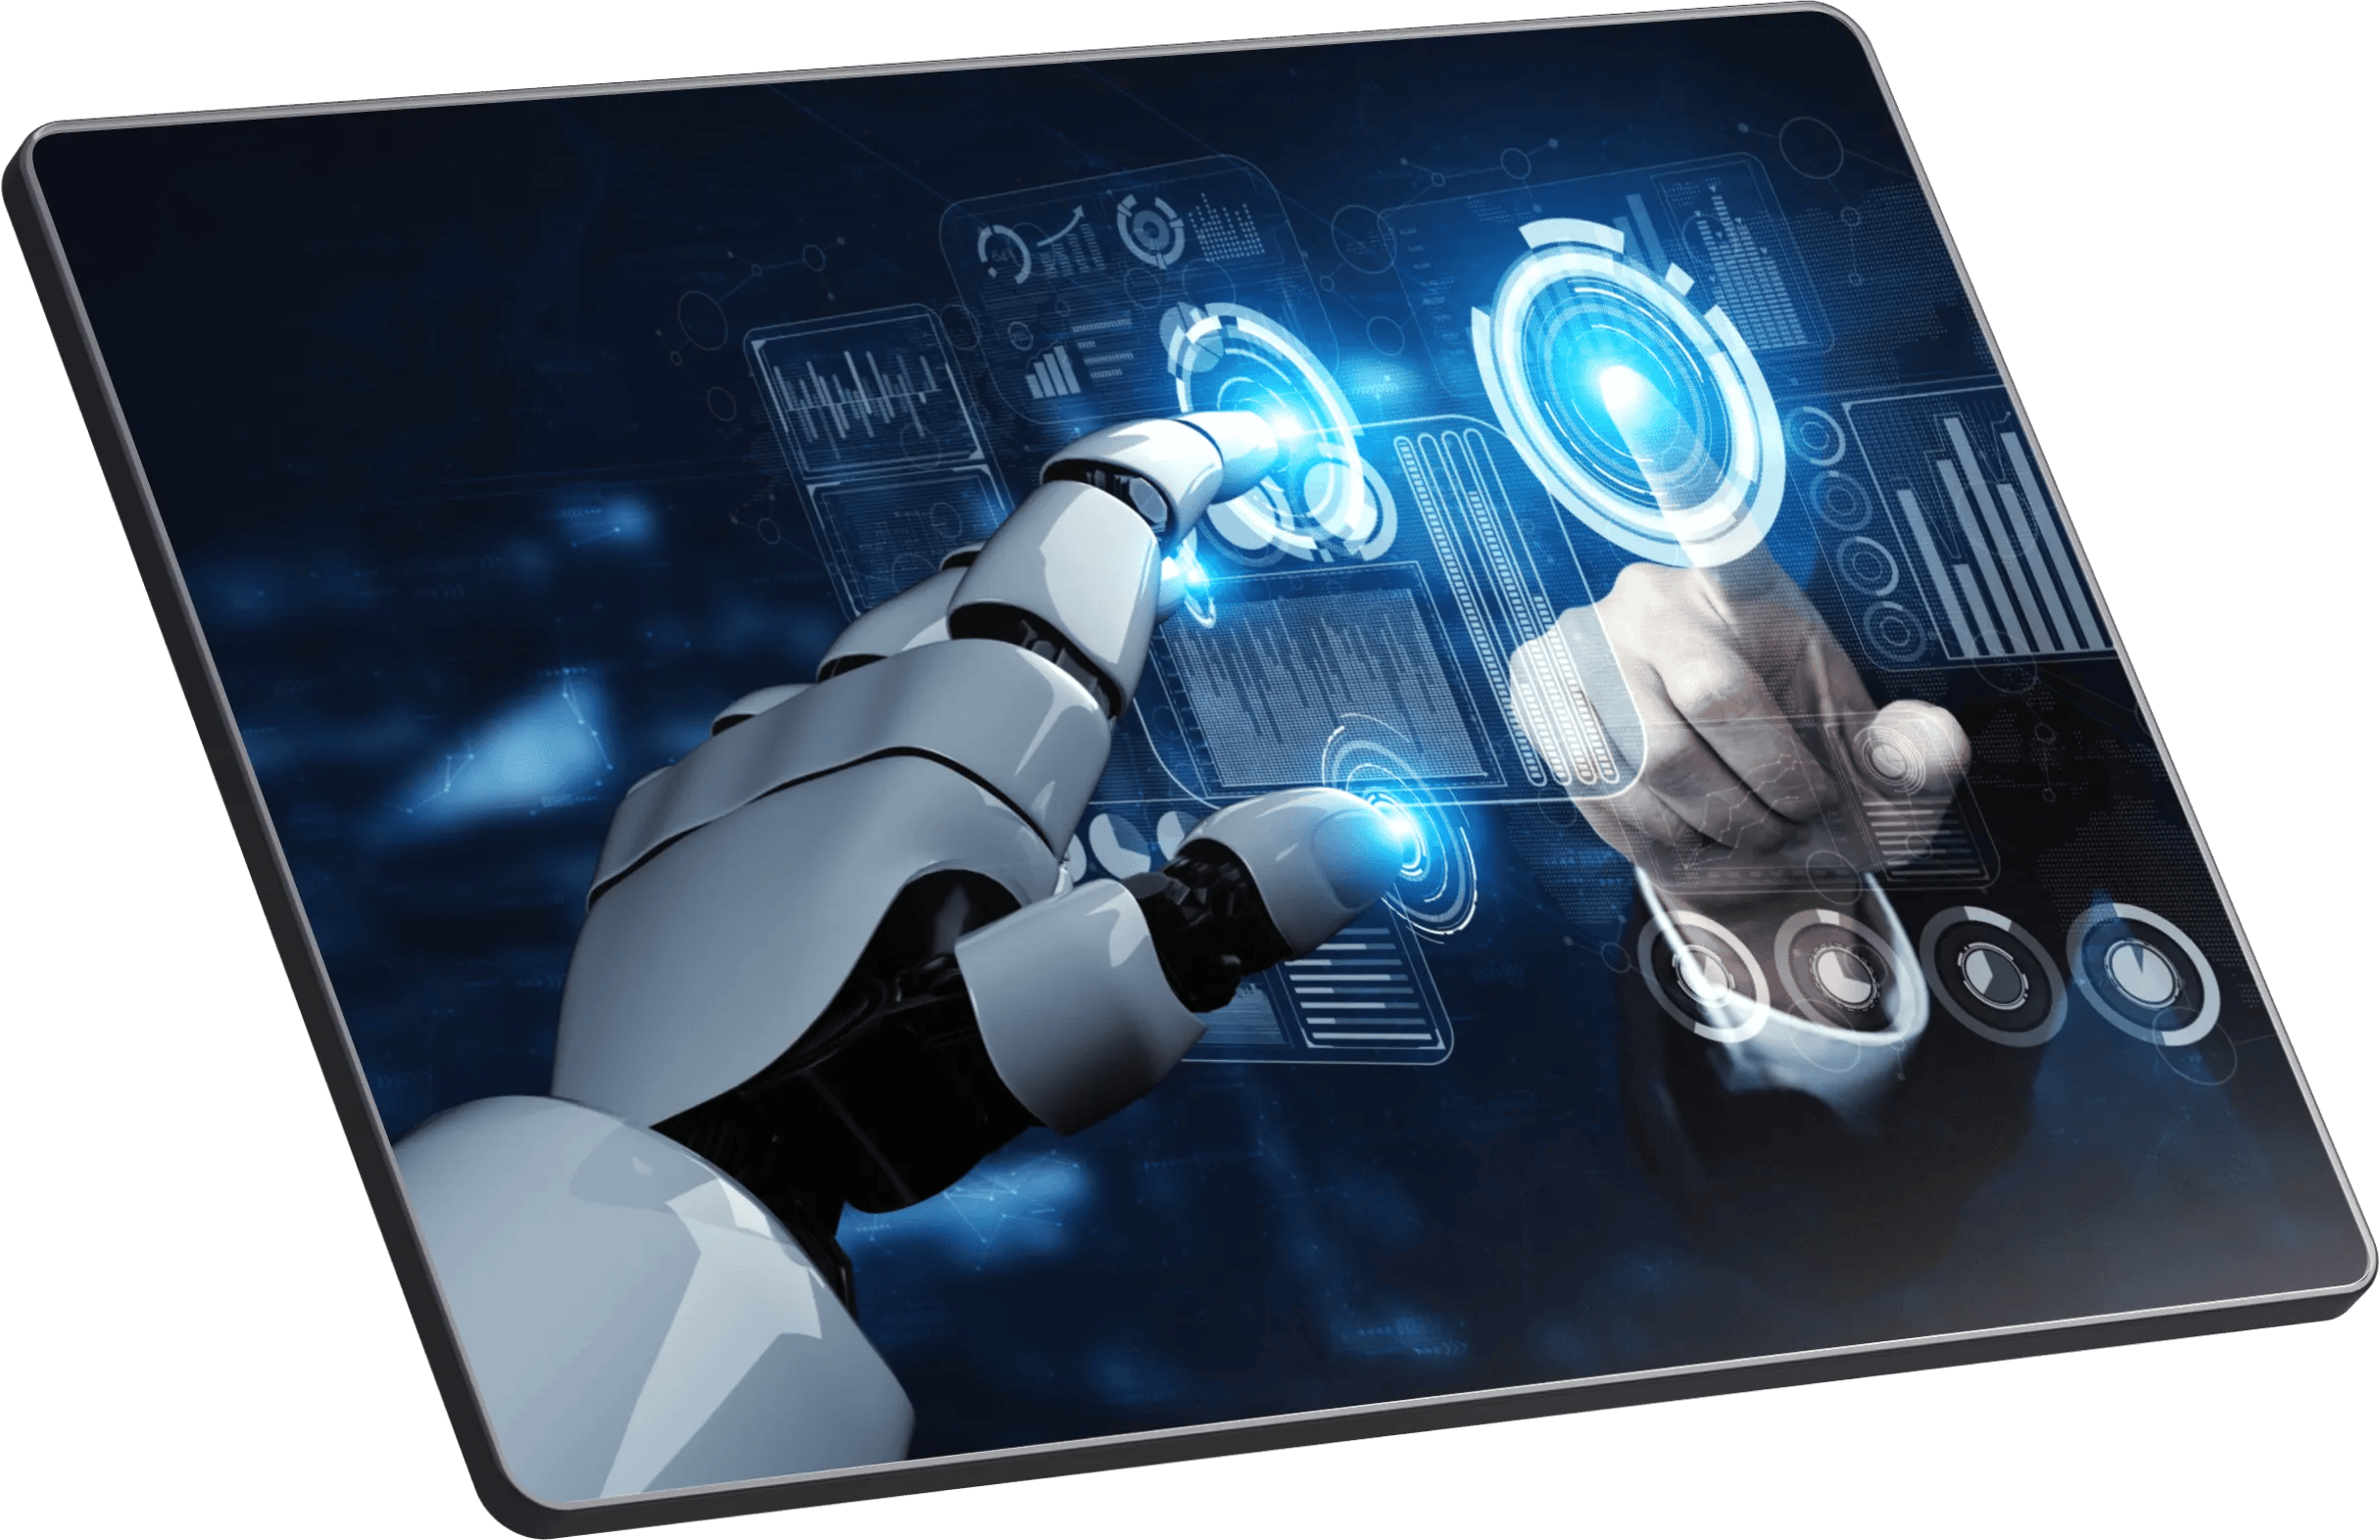 ACF SA ES Mano de robot y mano humana tocando una pantalla de ipad